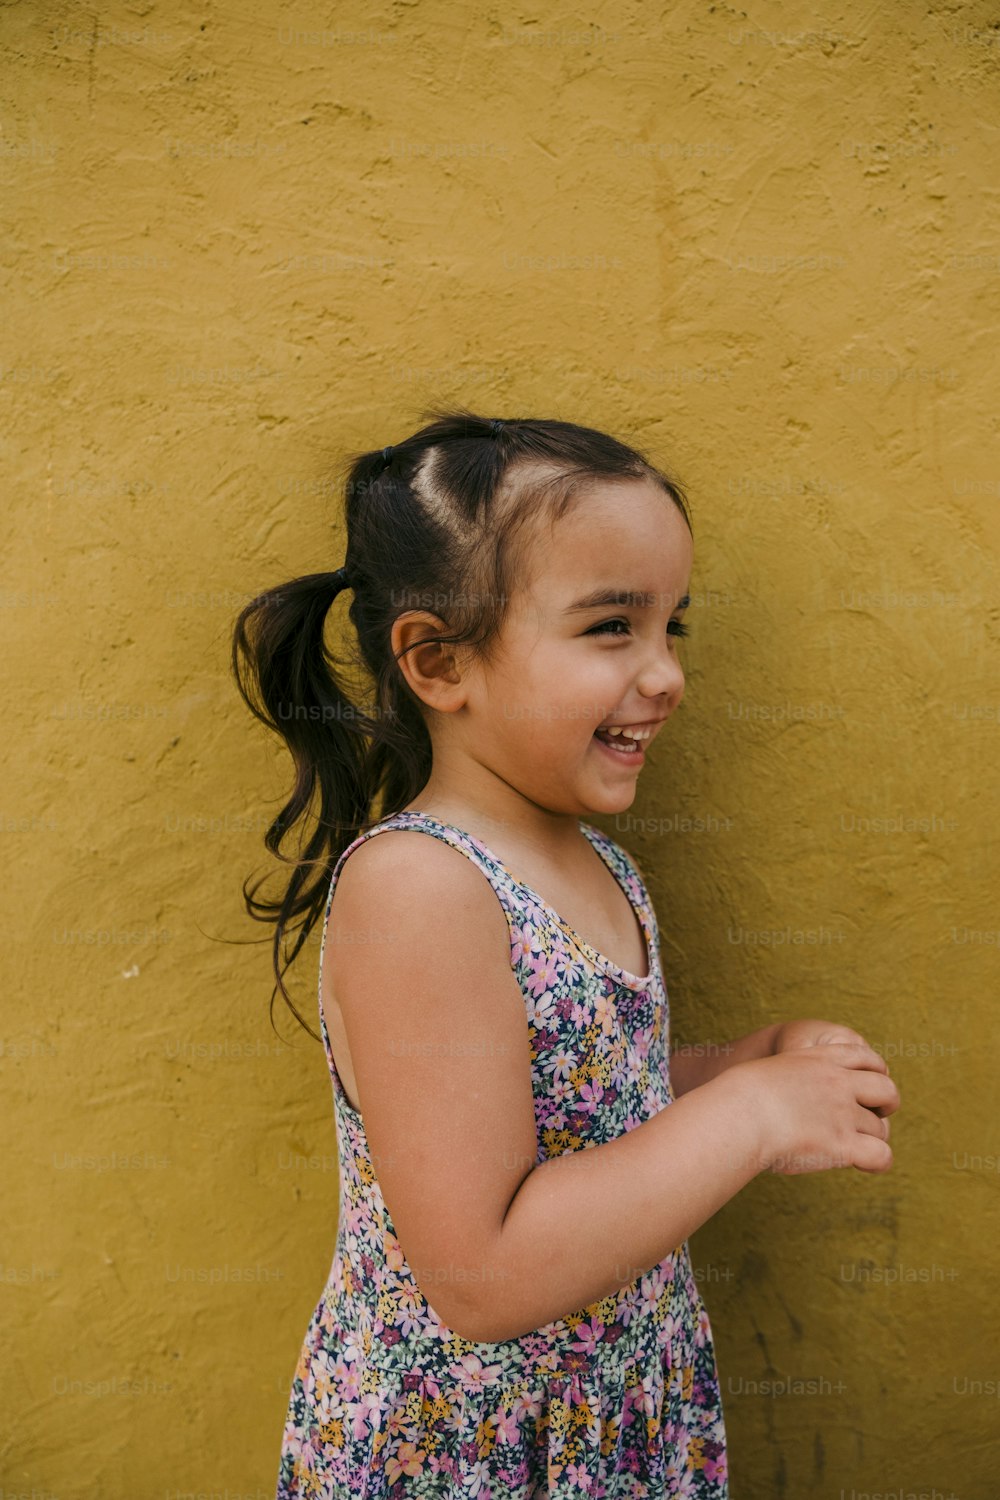 Une petite fille debout devant un mur jaune